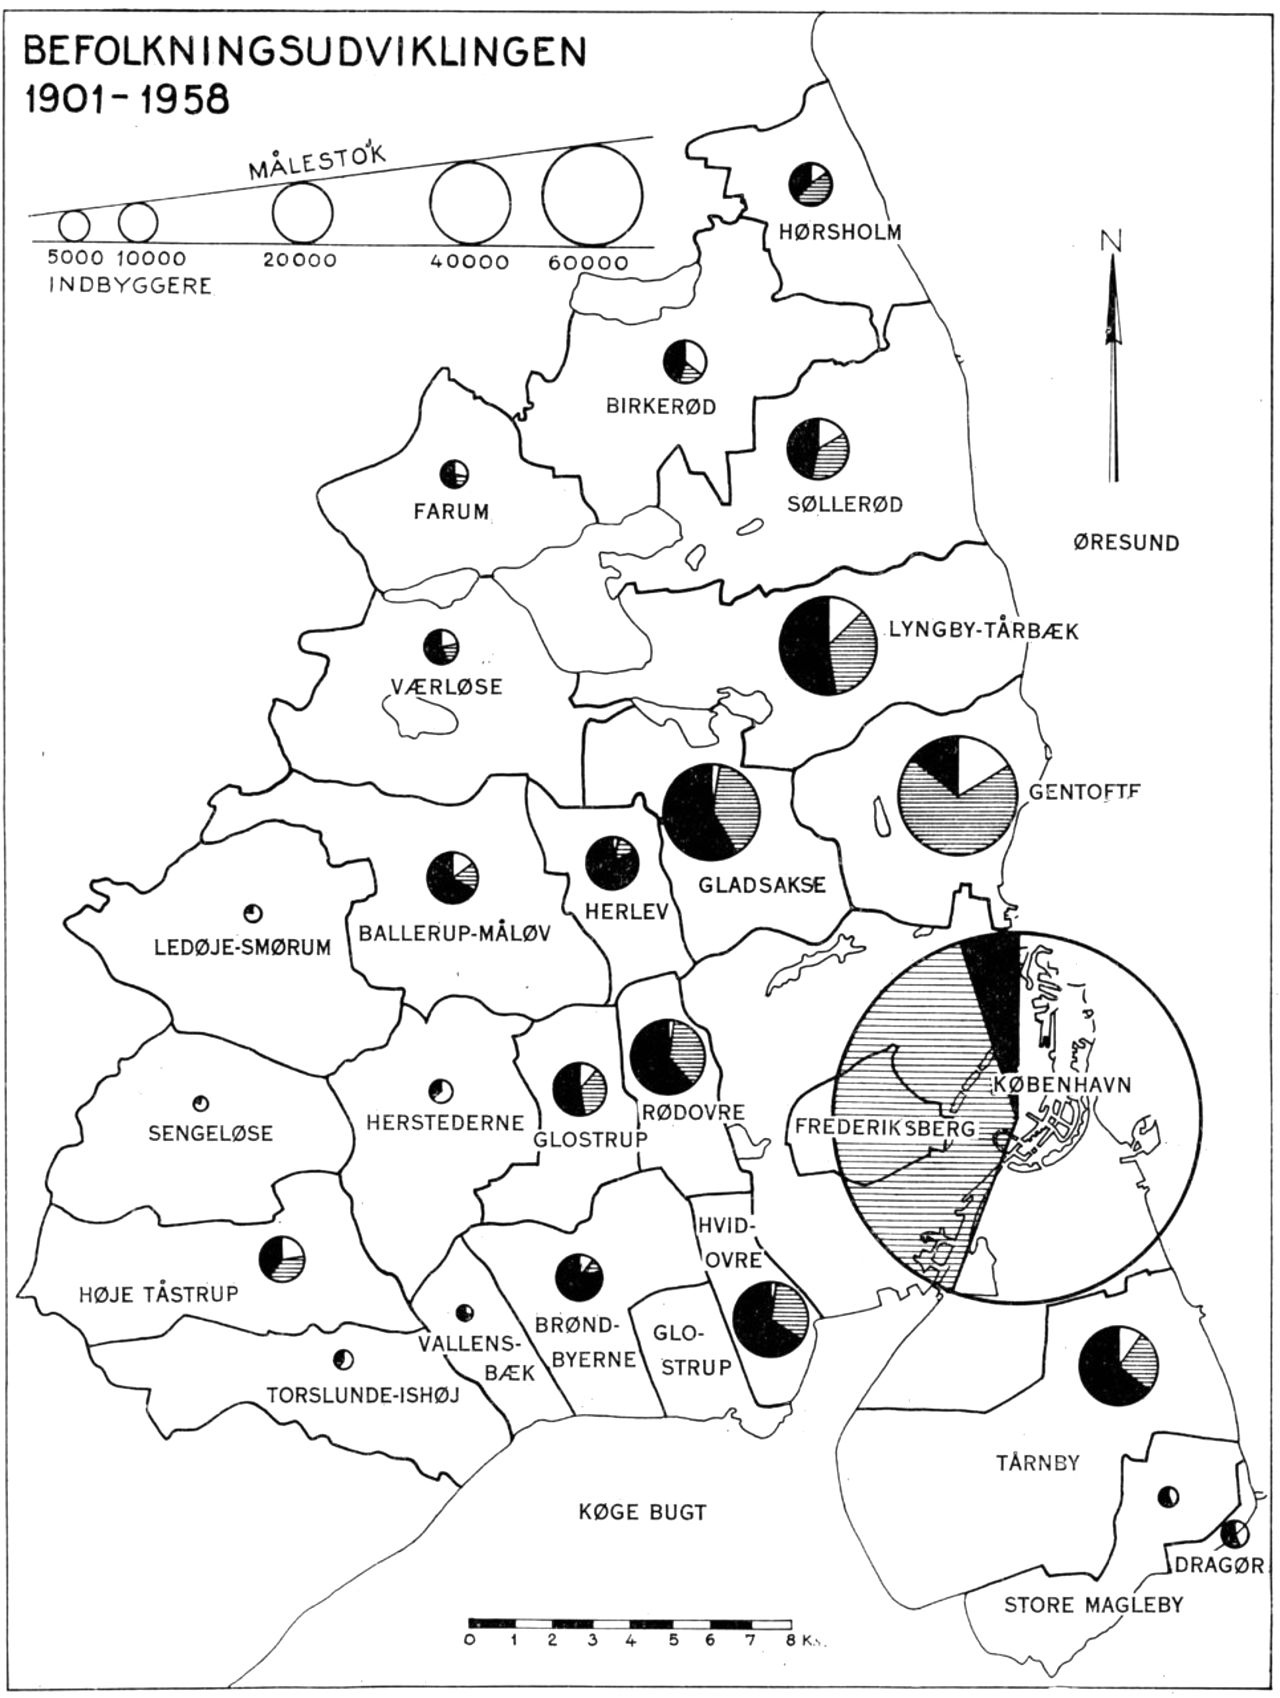 (Kort). Befolkningsudviklingen i Storkøbenhavn 1901–1958.Cirklernes areal angiver de enkelte kommuners folketal pr. 1/1 1958 (København og Frederiksberg er dog sammenlagt). De hvide cirkeludsnit angiver folketallet pr. 1/2 1901, det skraverede udsnit befolkningstilvæksten fra 1/2 1901 til 5/11 1940 og det sorte udsnit befolkningstilvæksten fra 5/11 1940 til 1/1 1958.